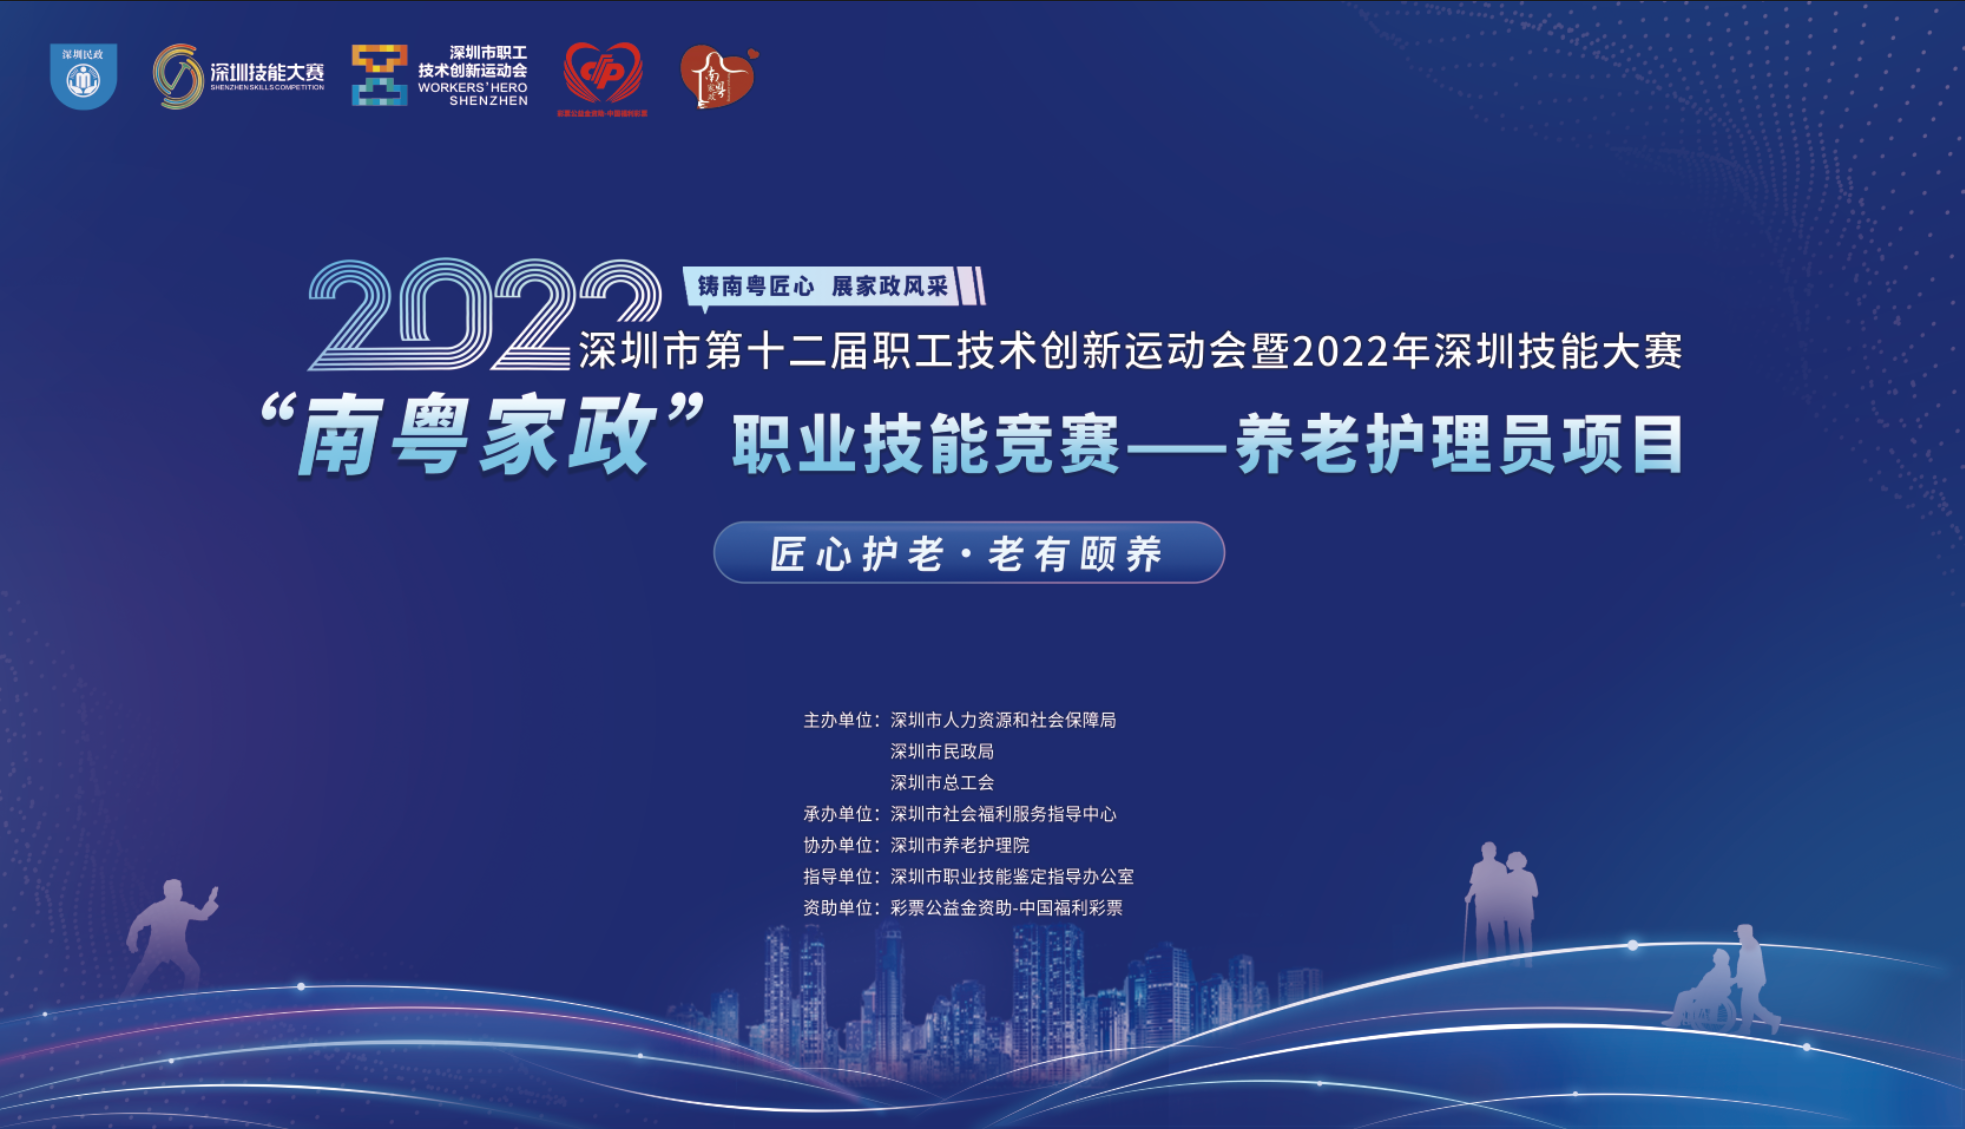 深圳养老护理员职业技能竞赛将于6月举办 快来报名